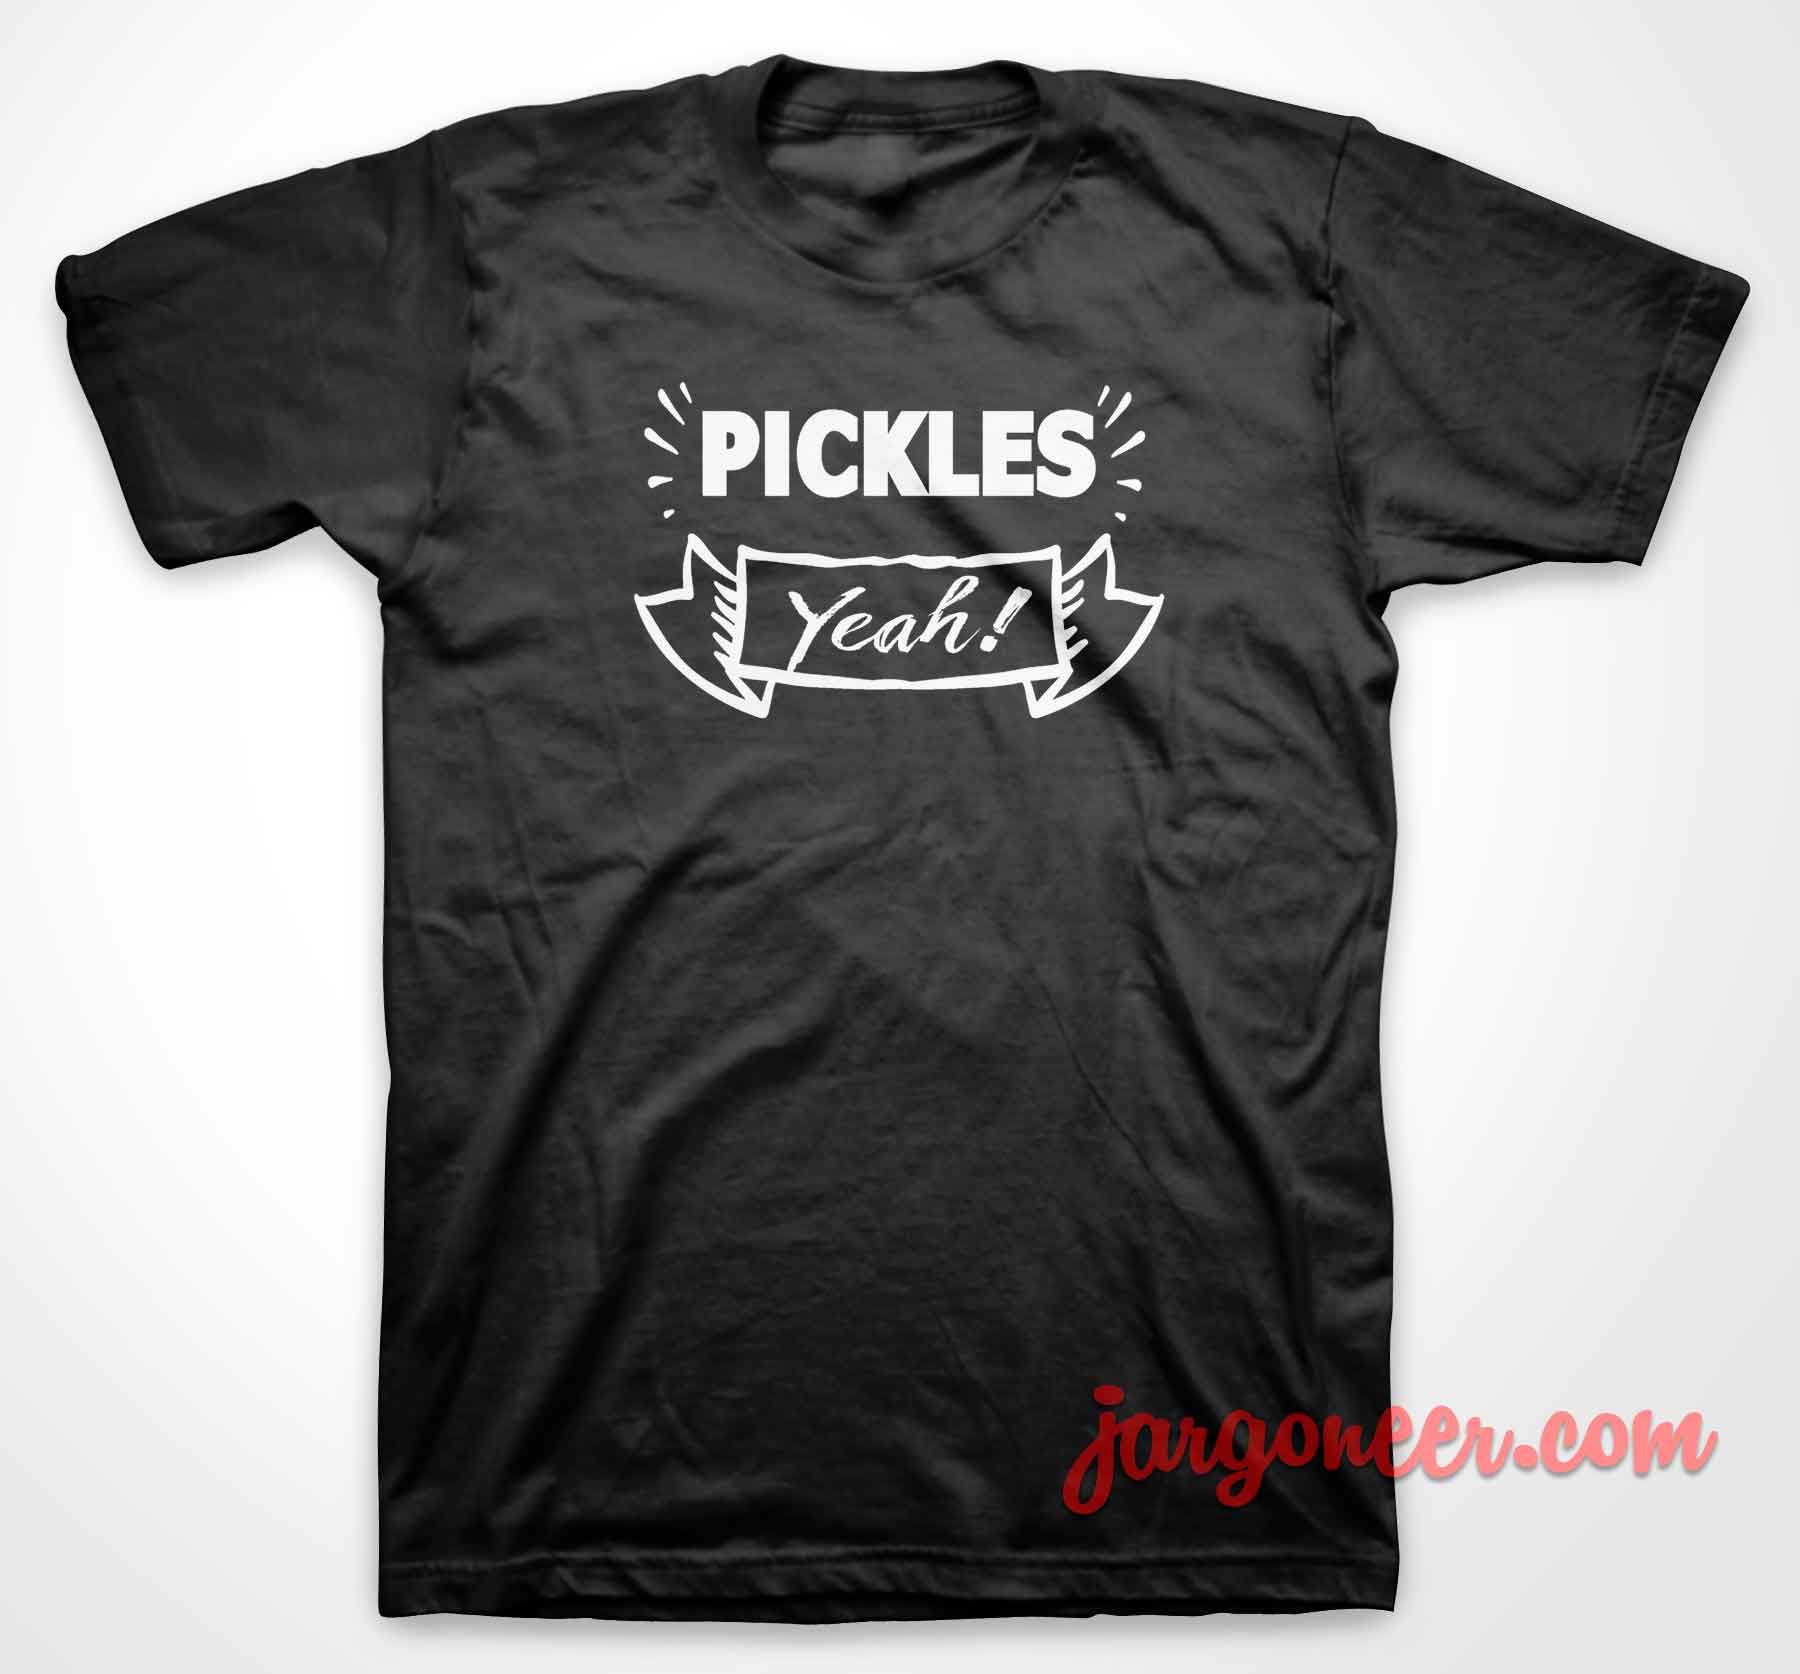 Pickles Yeah - Shop Unique Graphic Cool Shirt Designs